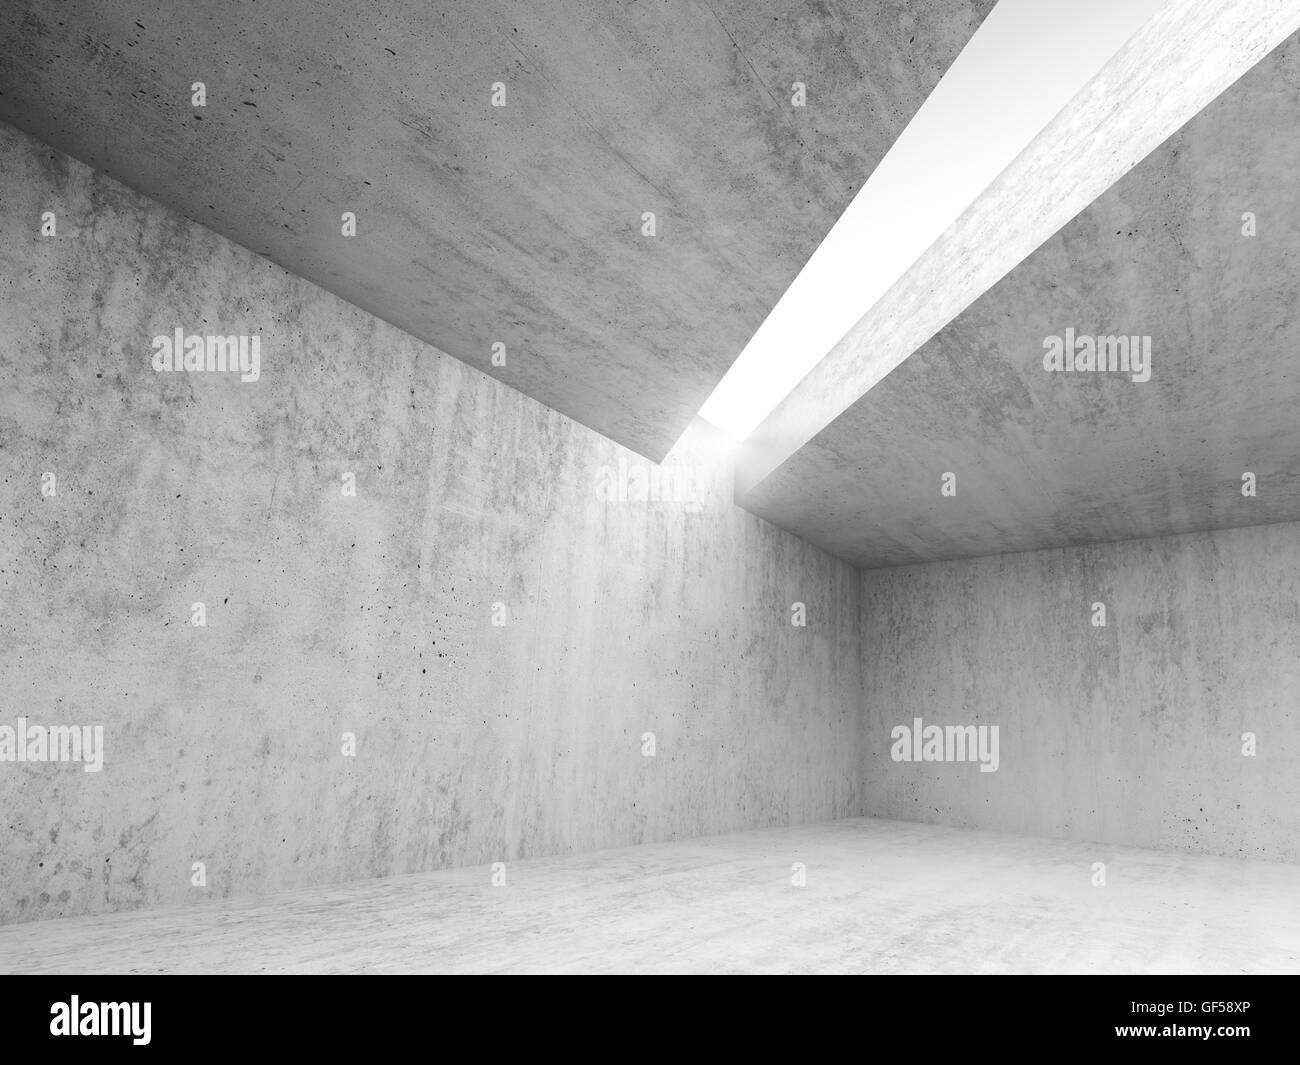 Abstrait architecture fond intérieur, vide local en béton avec de la lumière blanche ouverture dans le plafond, 3d illustration Banque D'Images